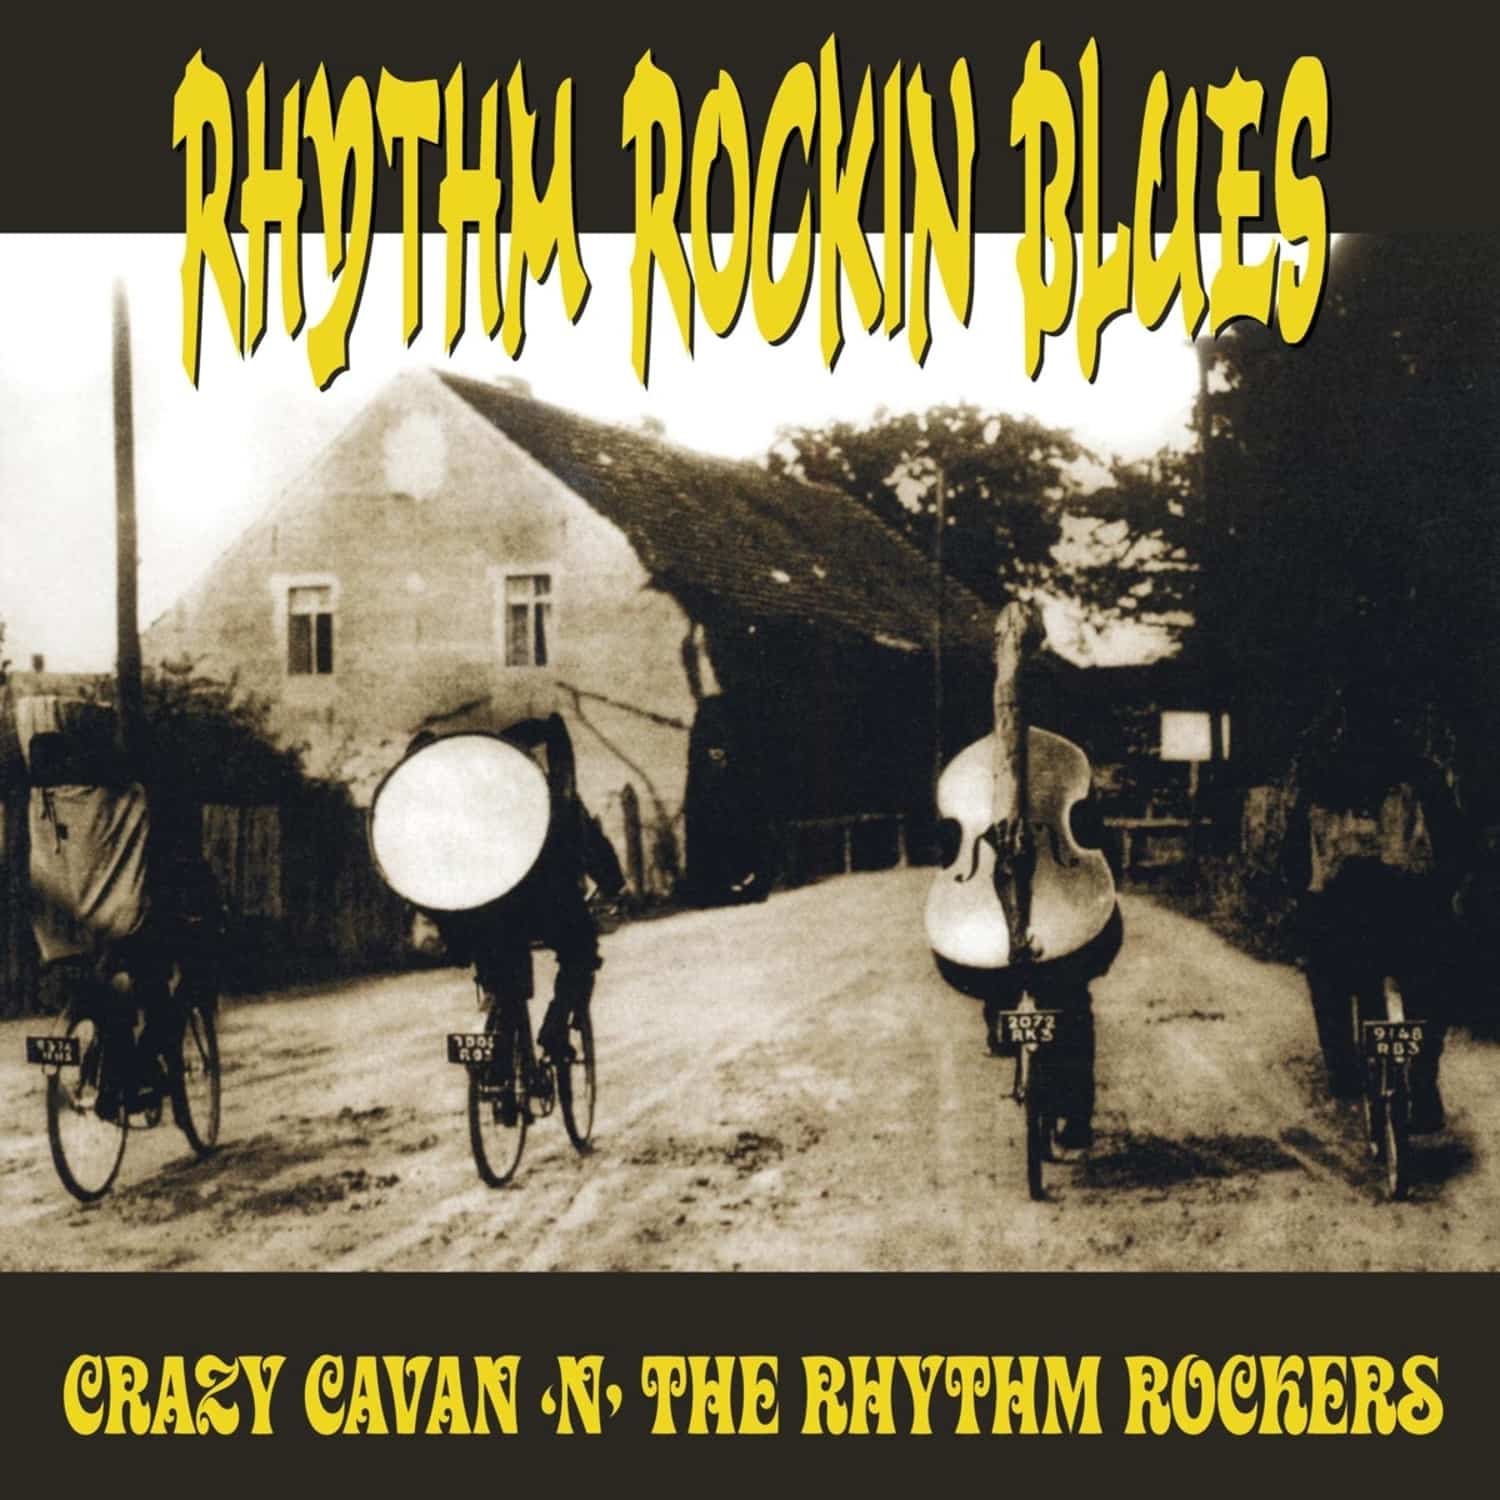 Crazy Cavan N the Rhythm Rockers - RHYTHM ROCKIN BLUES 